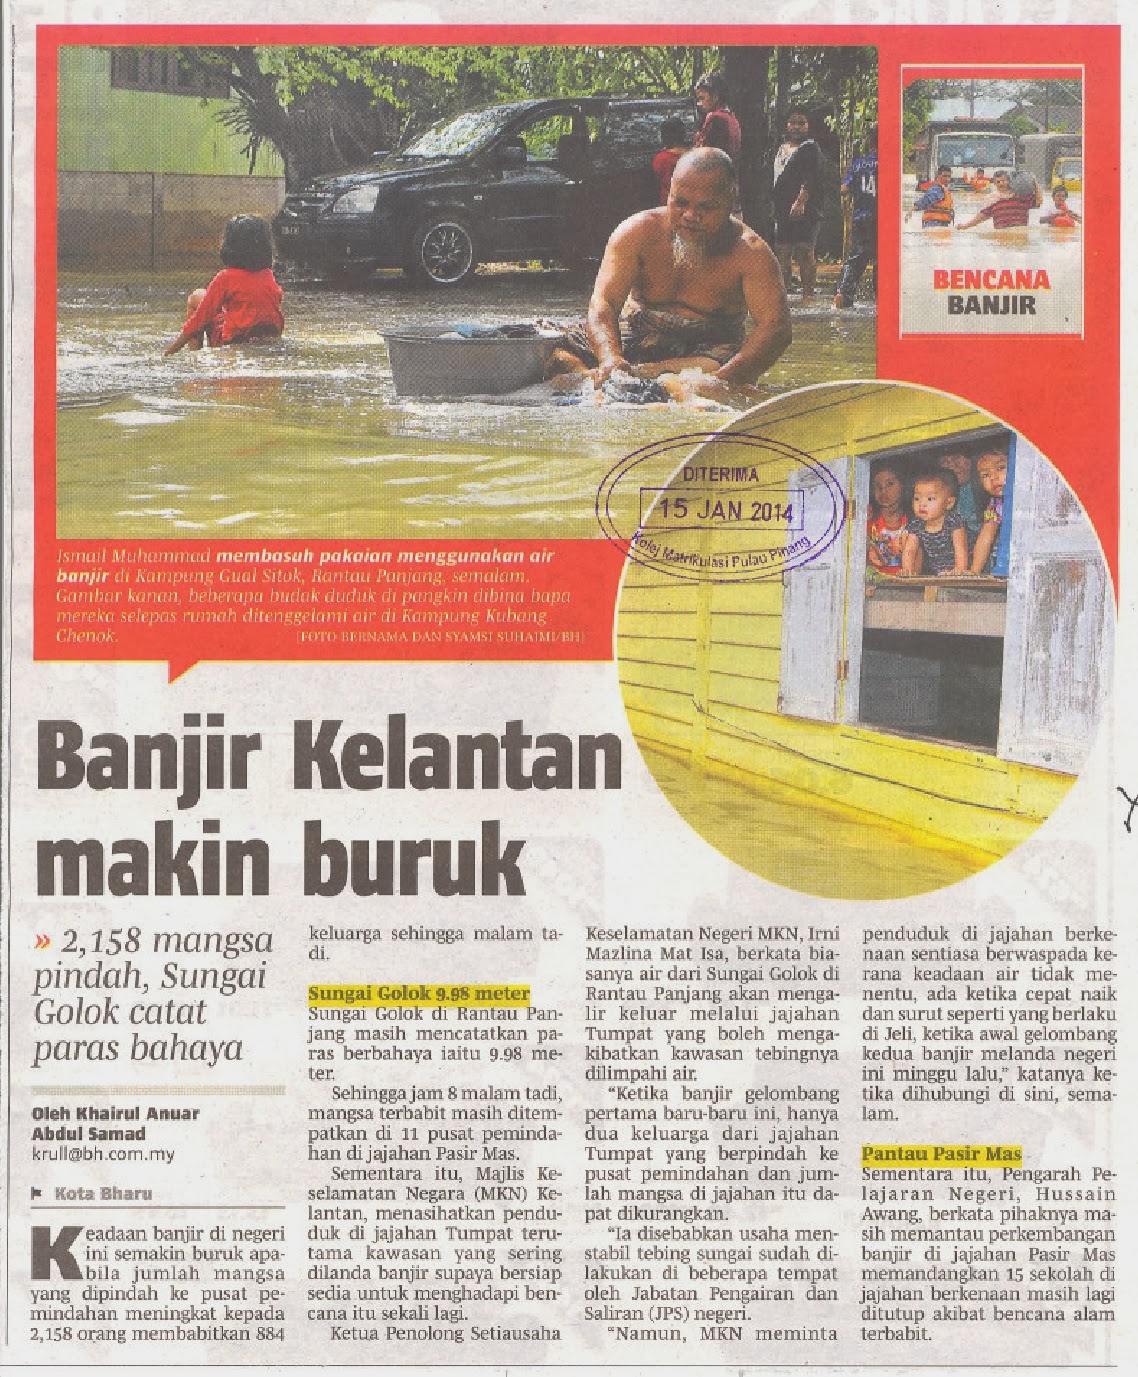 Banjir Kelantan makin buruk (15 JAN 2014)